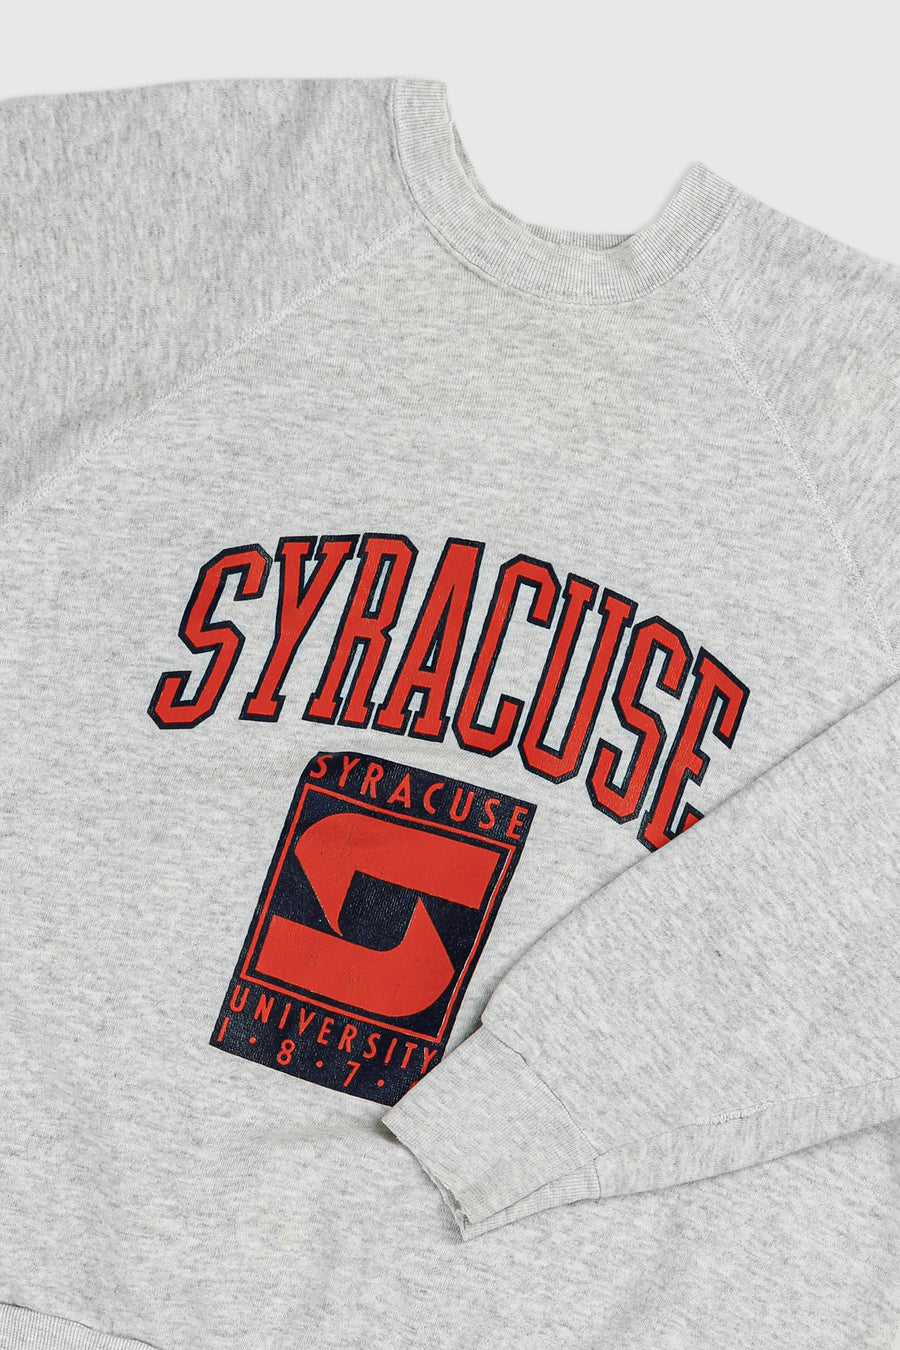 Vintage Syracuse University Sweatshirt - XL